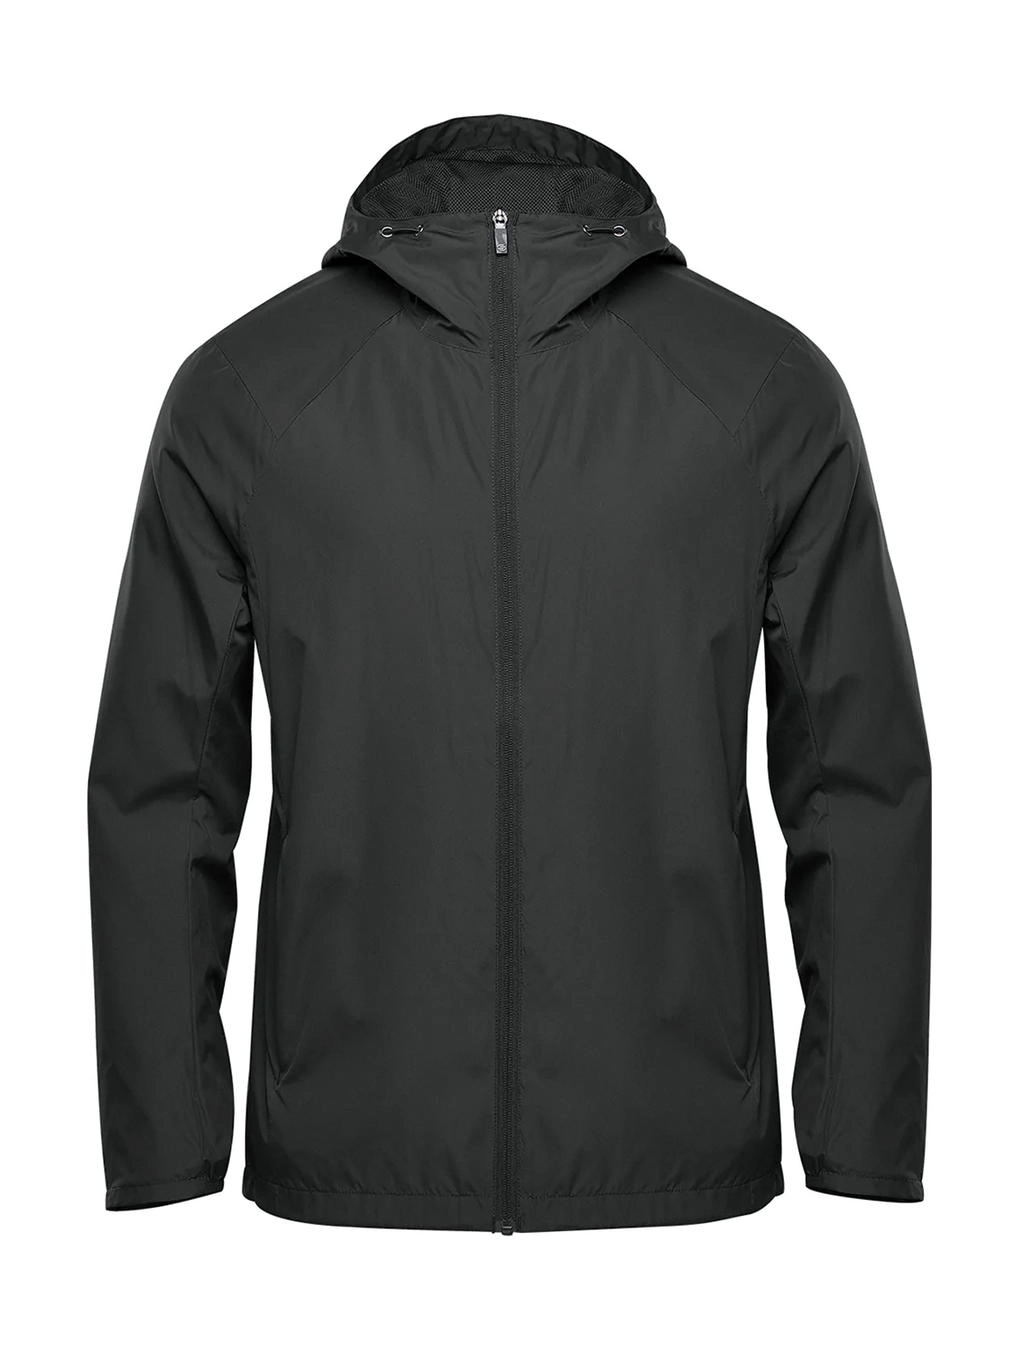 Men`s Wind Jacket zum Besticken und Bedrucken in der Farbe Black mit Ihren Logo, Schriftzug oder Motiv.